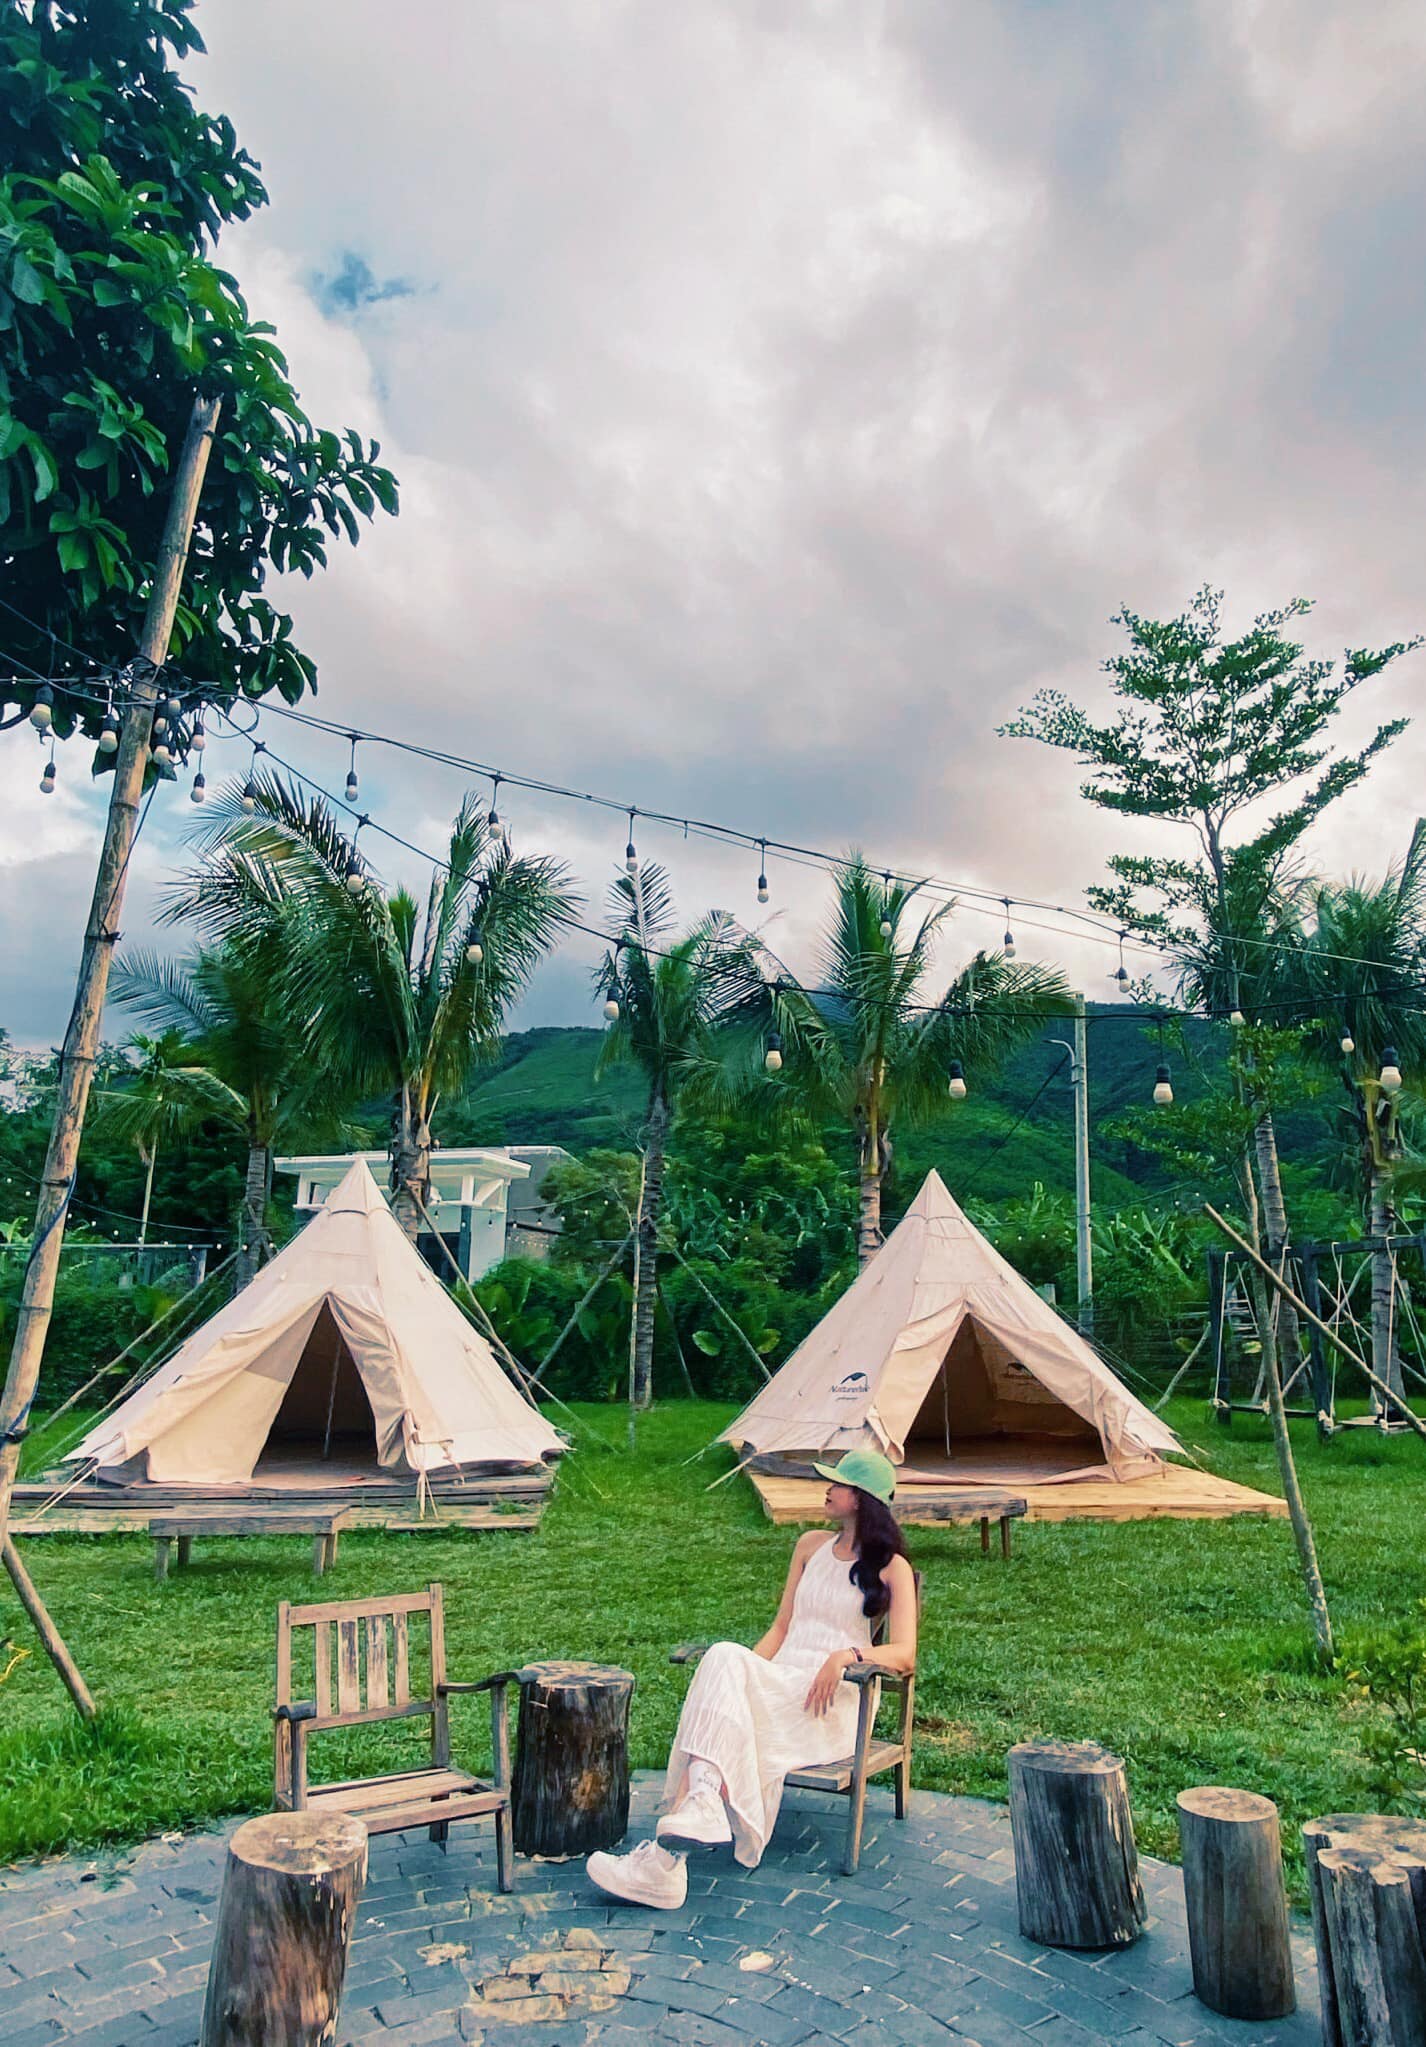 Hoà Bắc Ecologde – Camping Space Art – Đà Nẵng